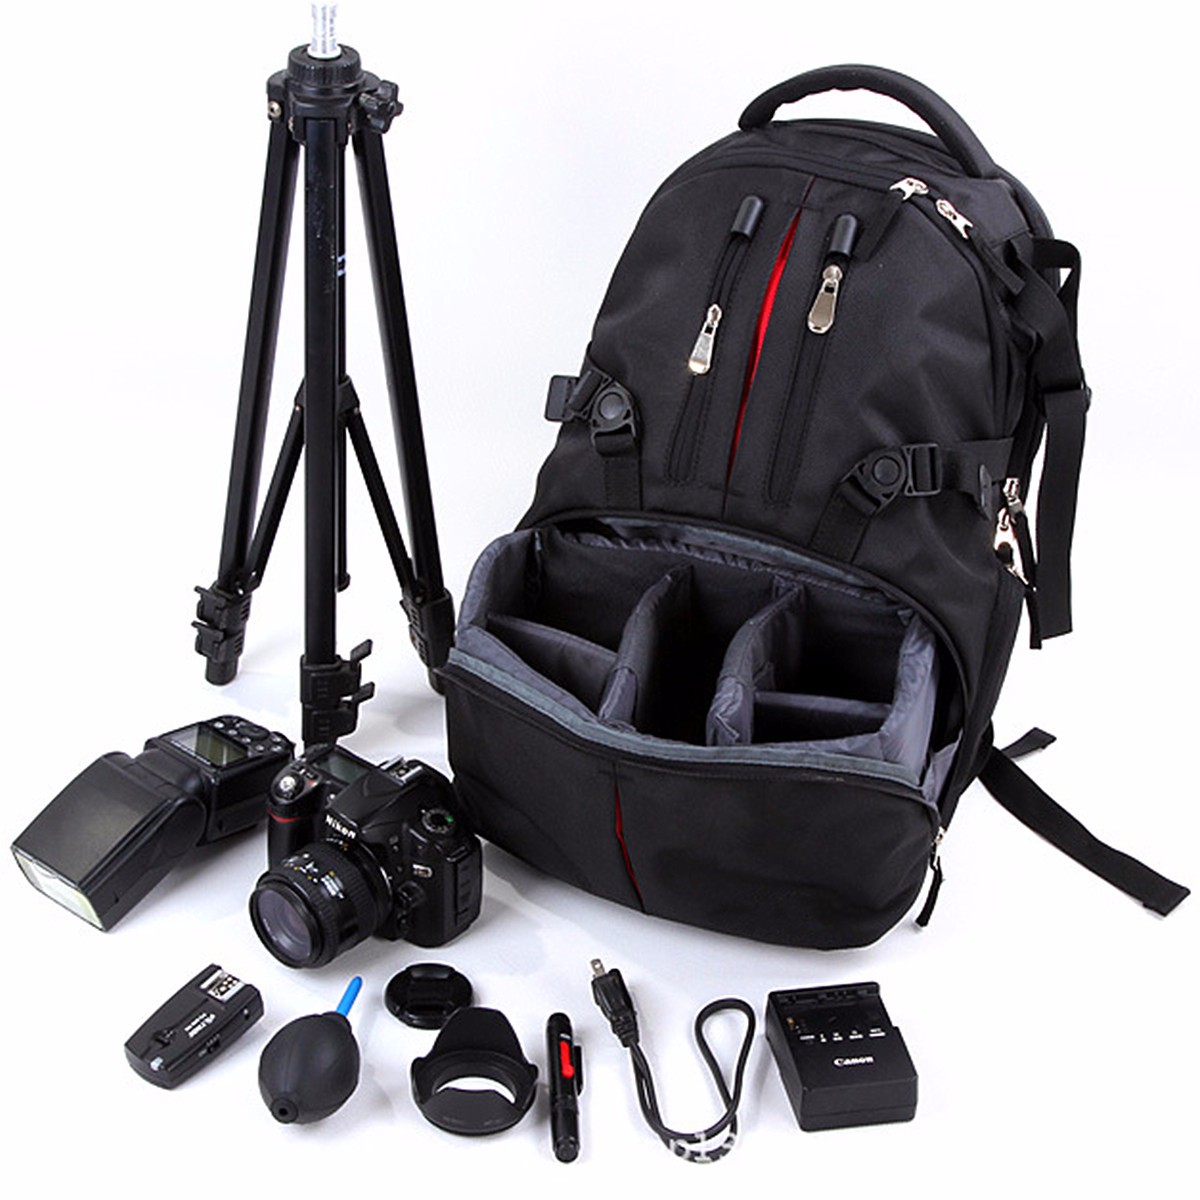 

Нейлон водонепроницаемый ударопрочный камера ноутбук сумка линзы случае рюкзак для Canon Nikon SLR DSLR камеры